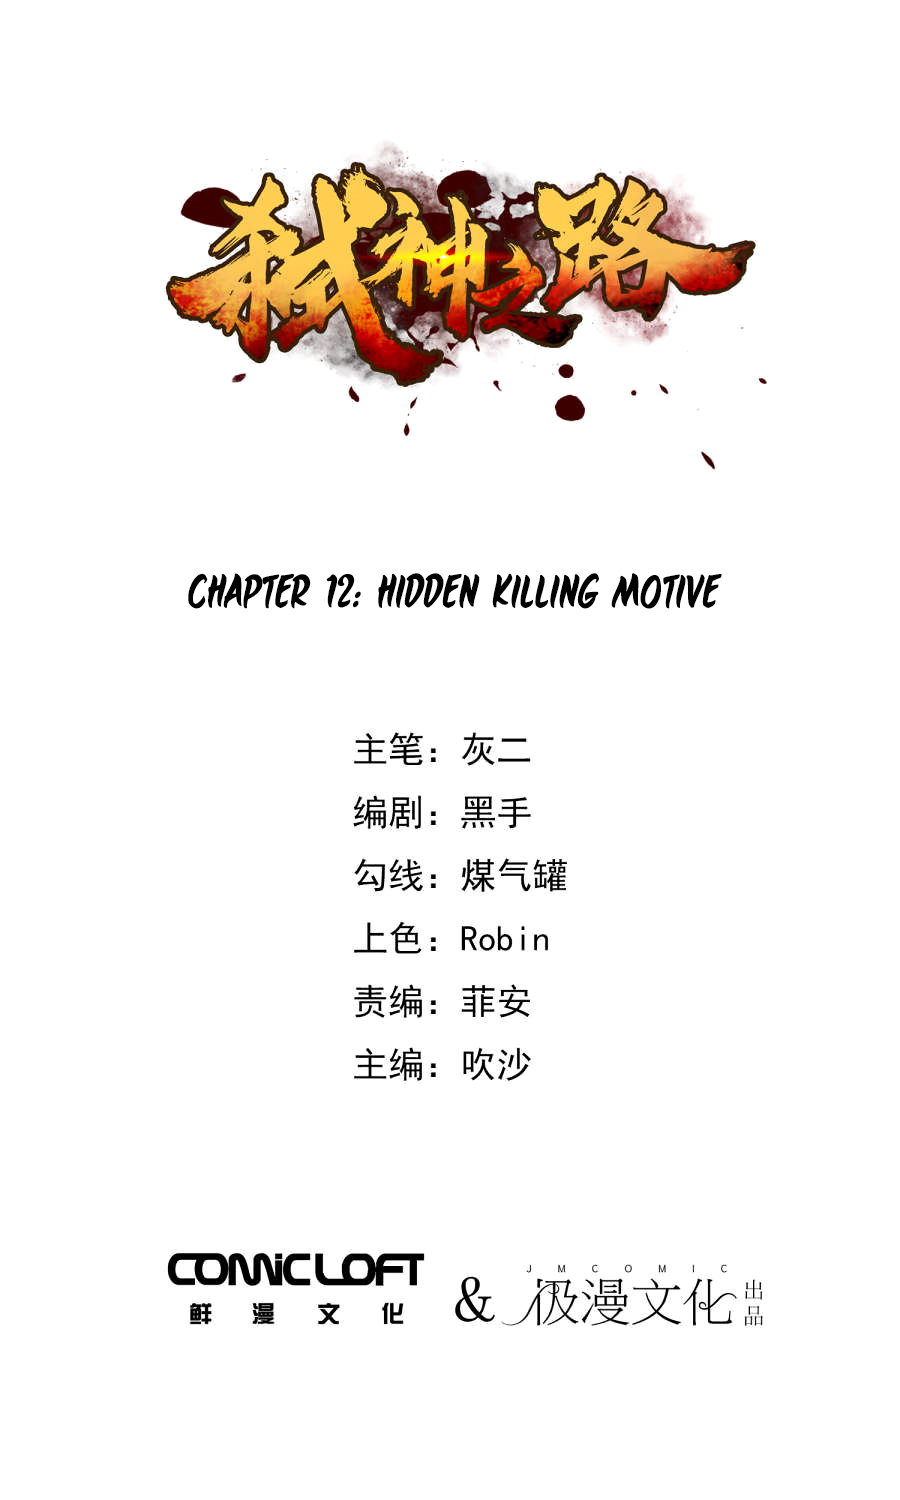 Shi Shen Zhi Lu Ch. 12 Hidden Killing Motive